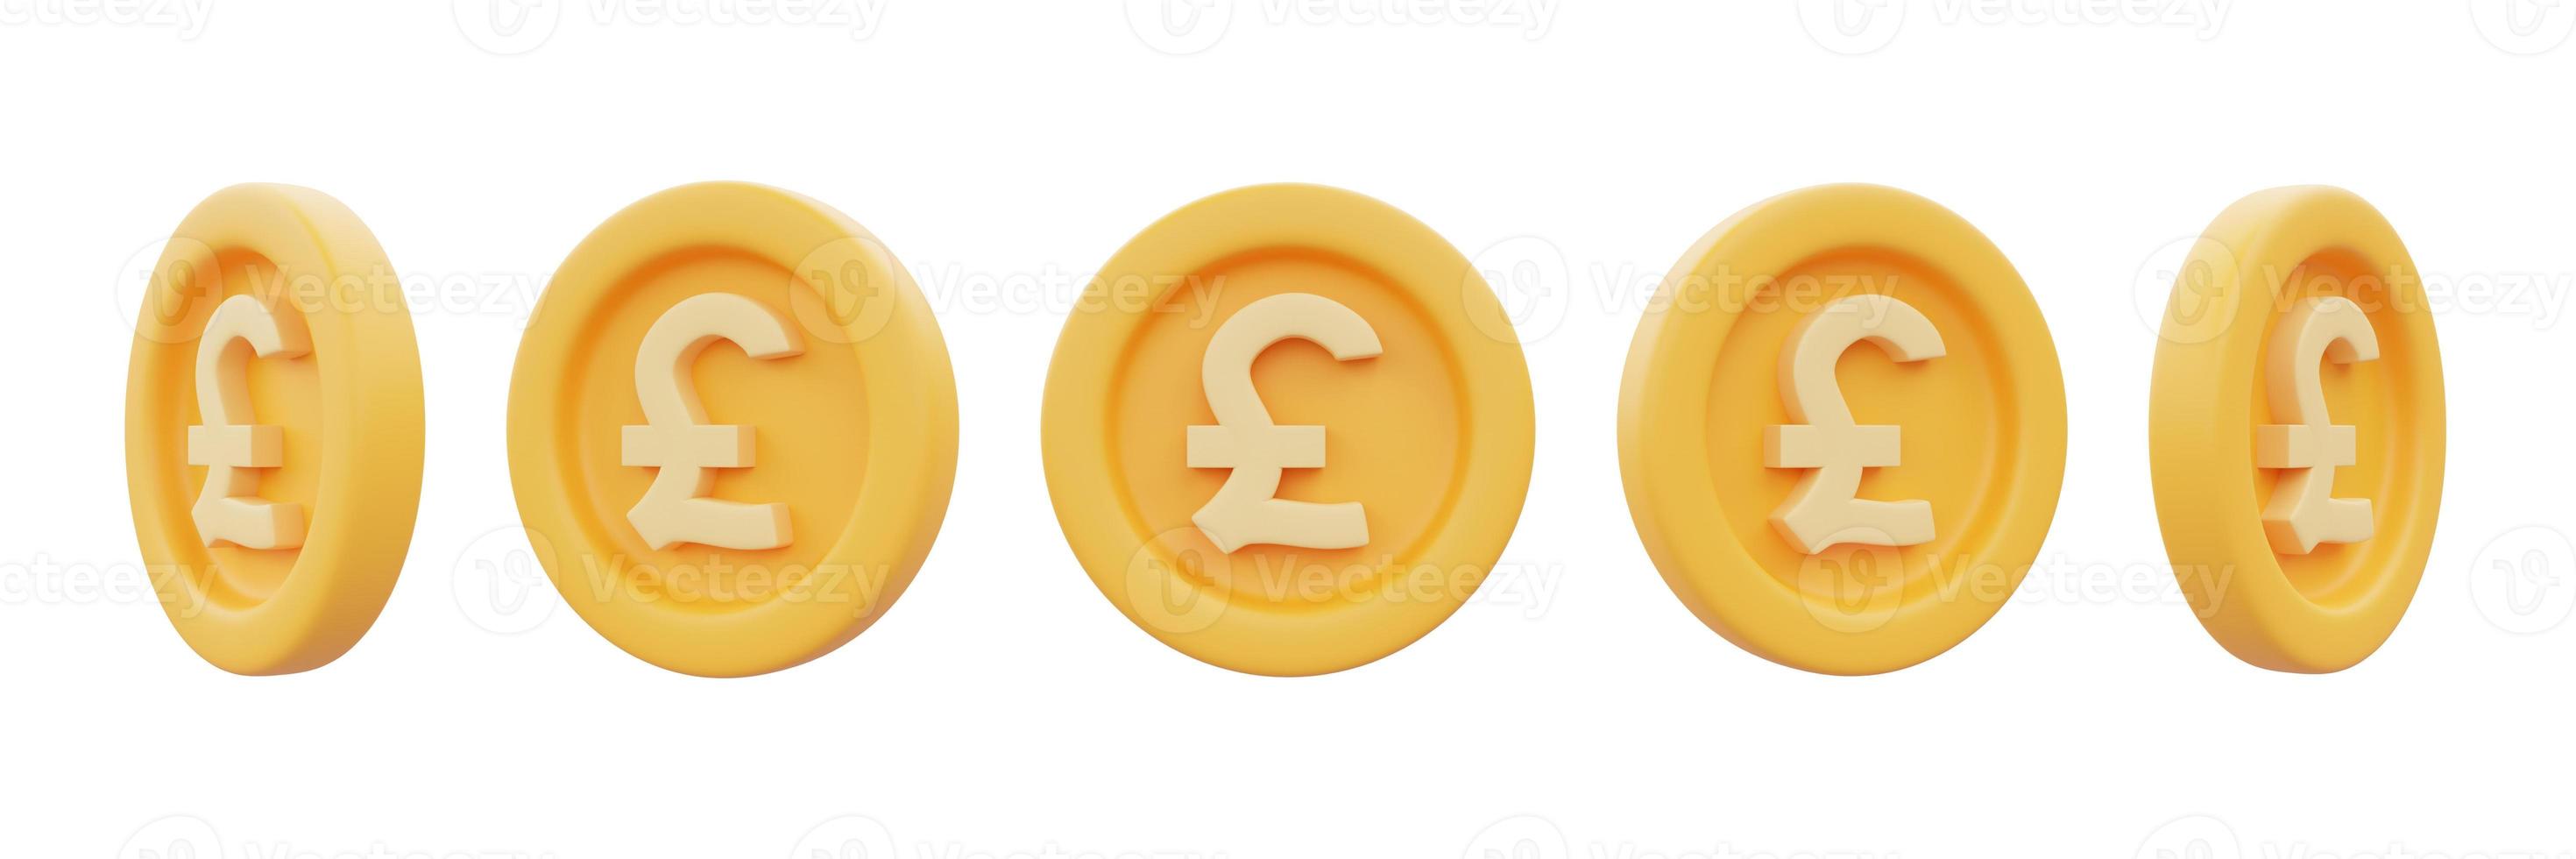 conjunto de moedas de ouro com sinal de libra isolado no fundo branco, negócios, finanças ou conceito de câmbio, renderização style.3d mínima. foto